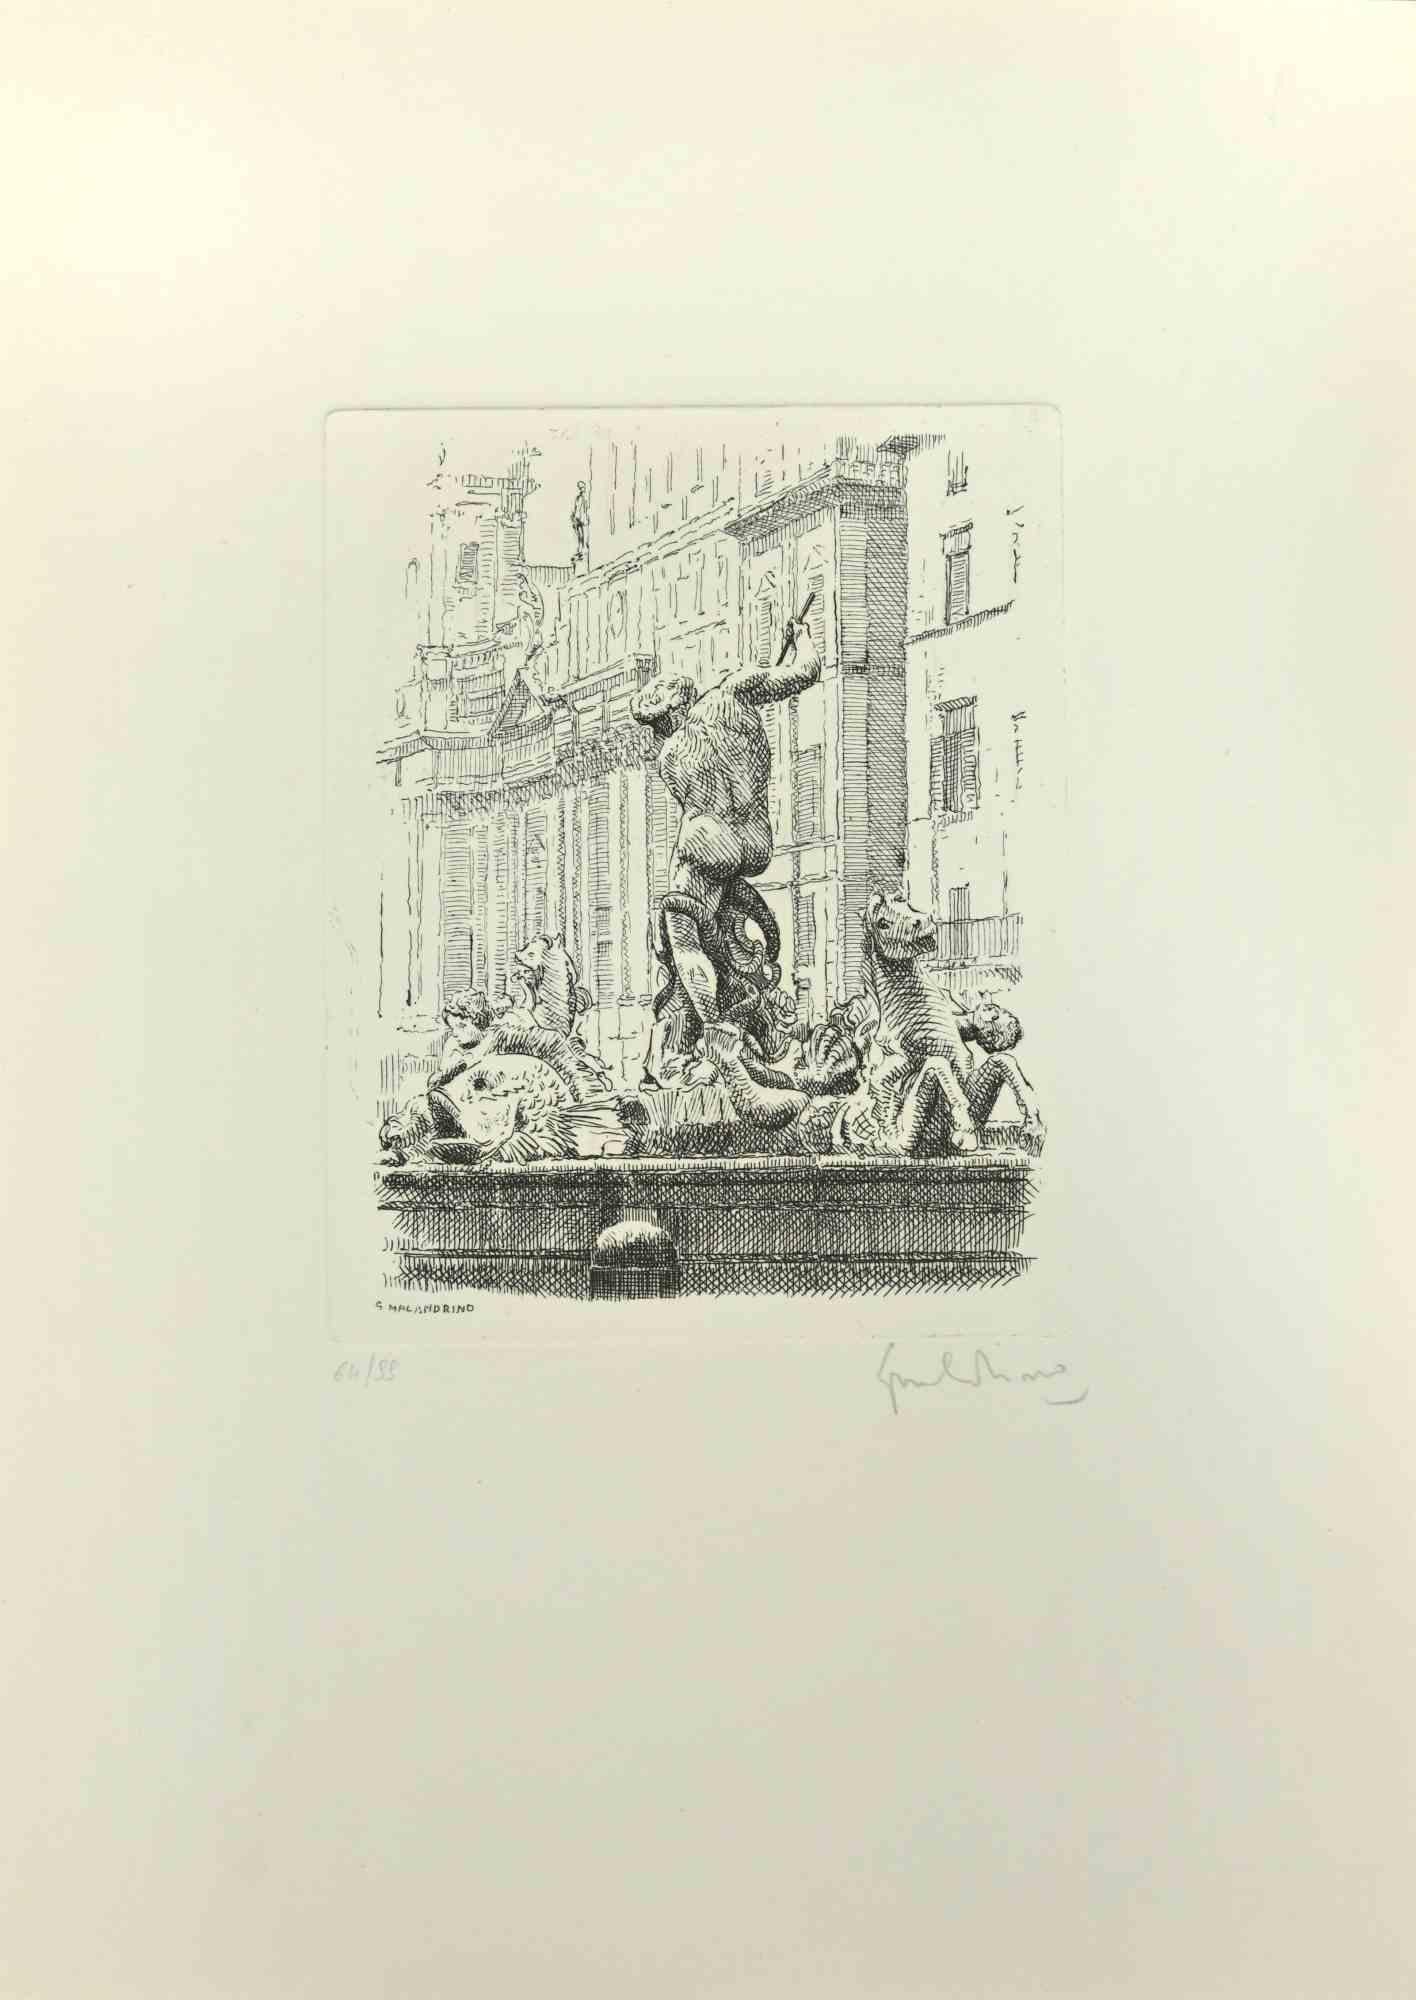 Navona Square ist ein Kunstwerk von Giuseppe Malandrino.

Druck in Ätztechnik.

Vom Künstler in der rechten unteren Ecke mit Bleistift handsigniert.

Nummerierte Auflage von 55 Exemplaren.

Guter Zustand. 

Dieses Kunstwerk stellt die wunderschöne